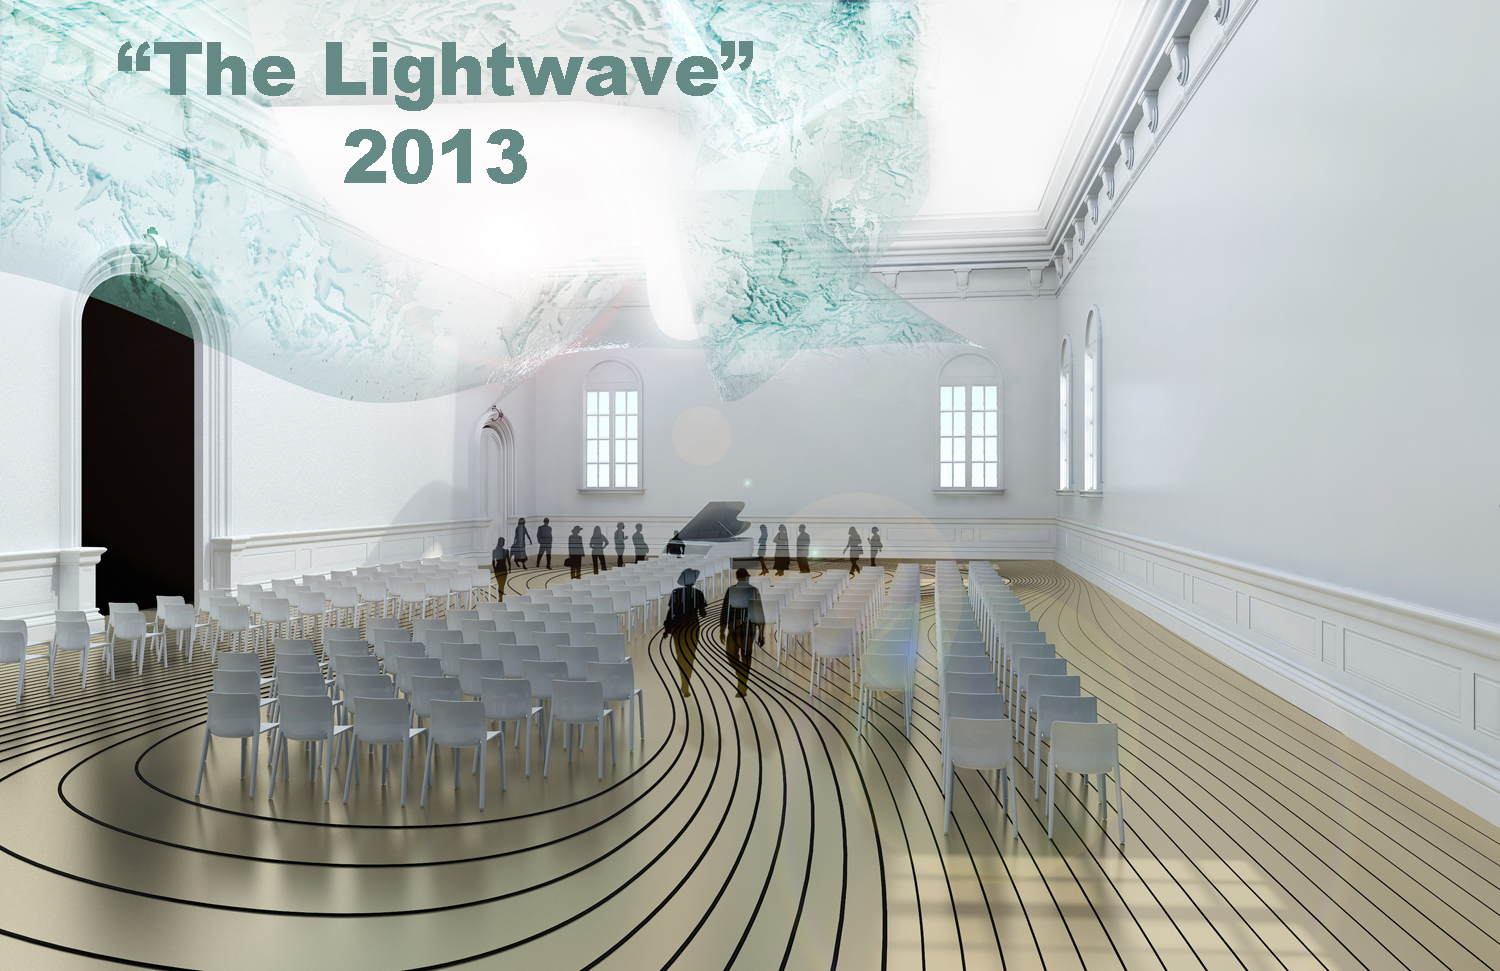    "The Lightwave"  2013  